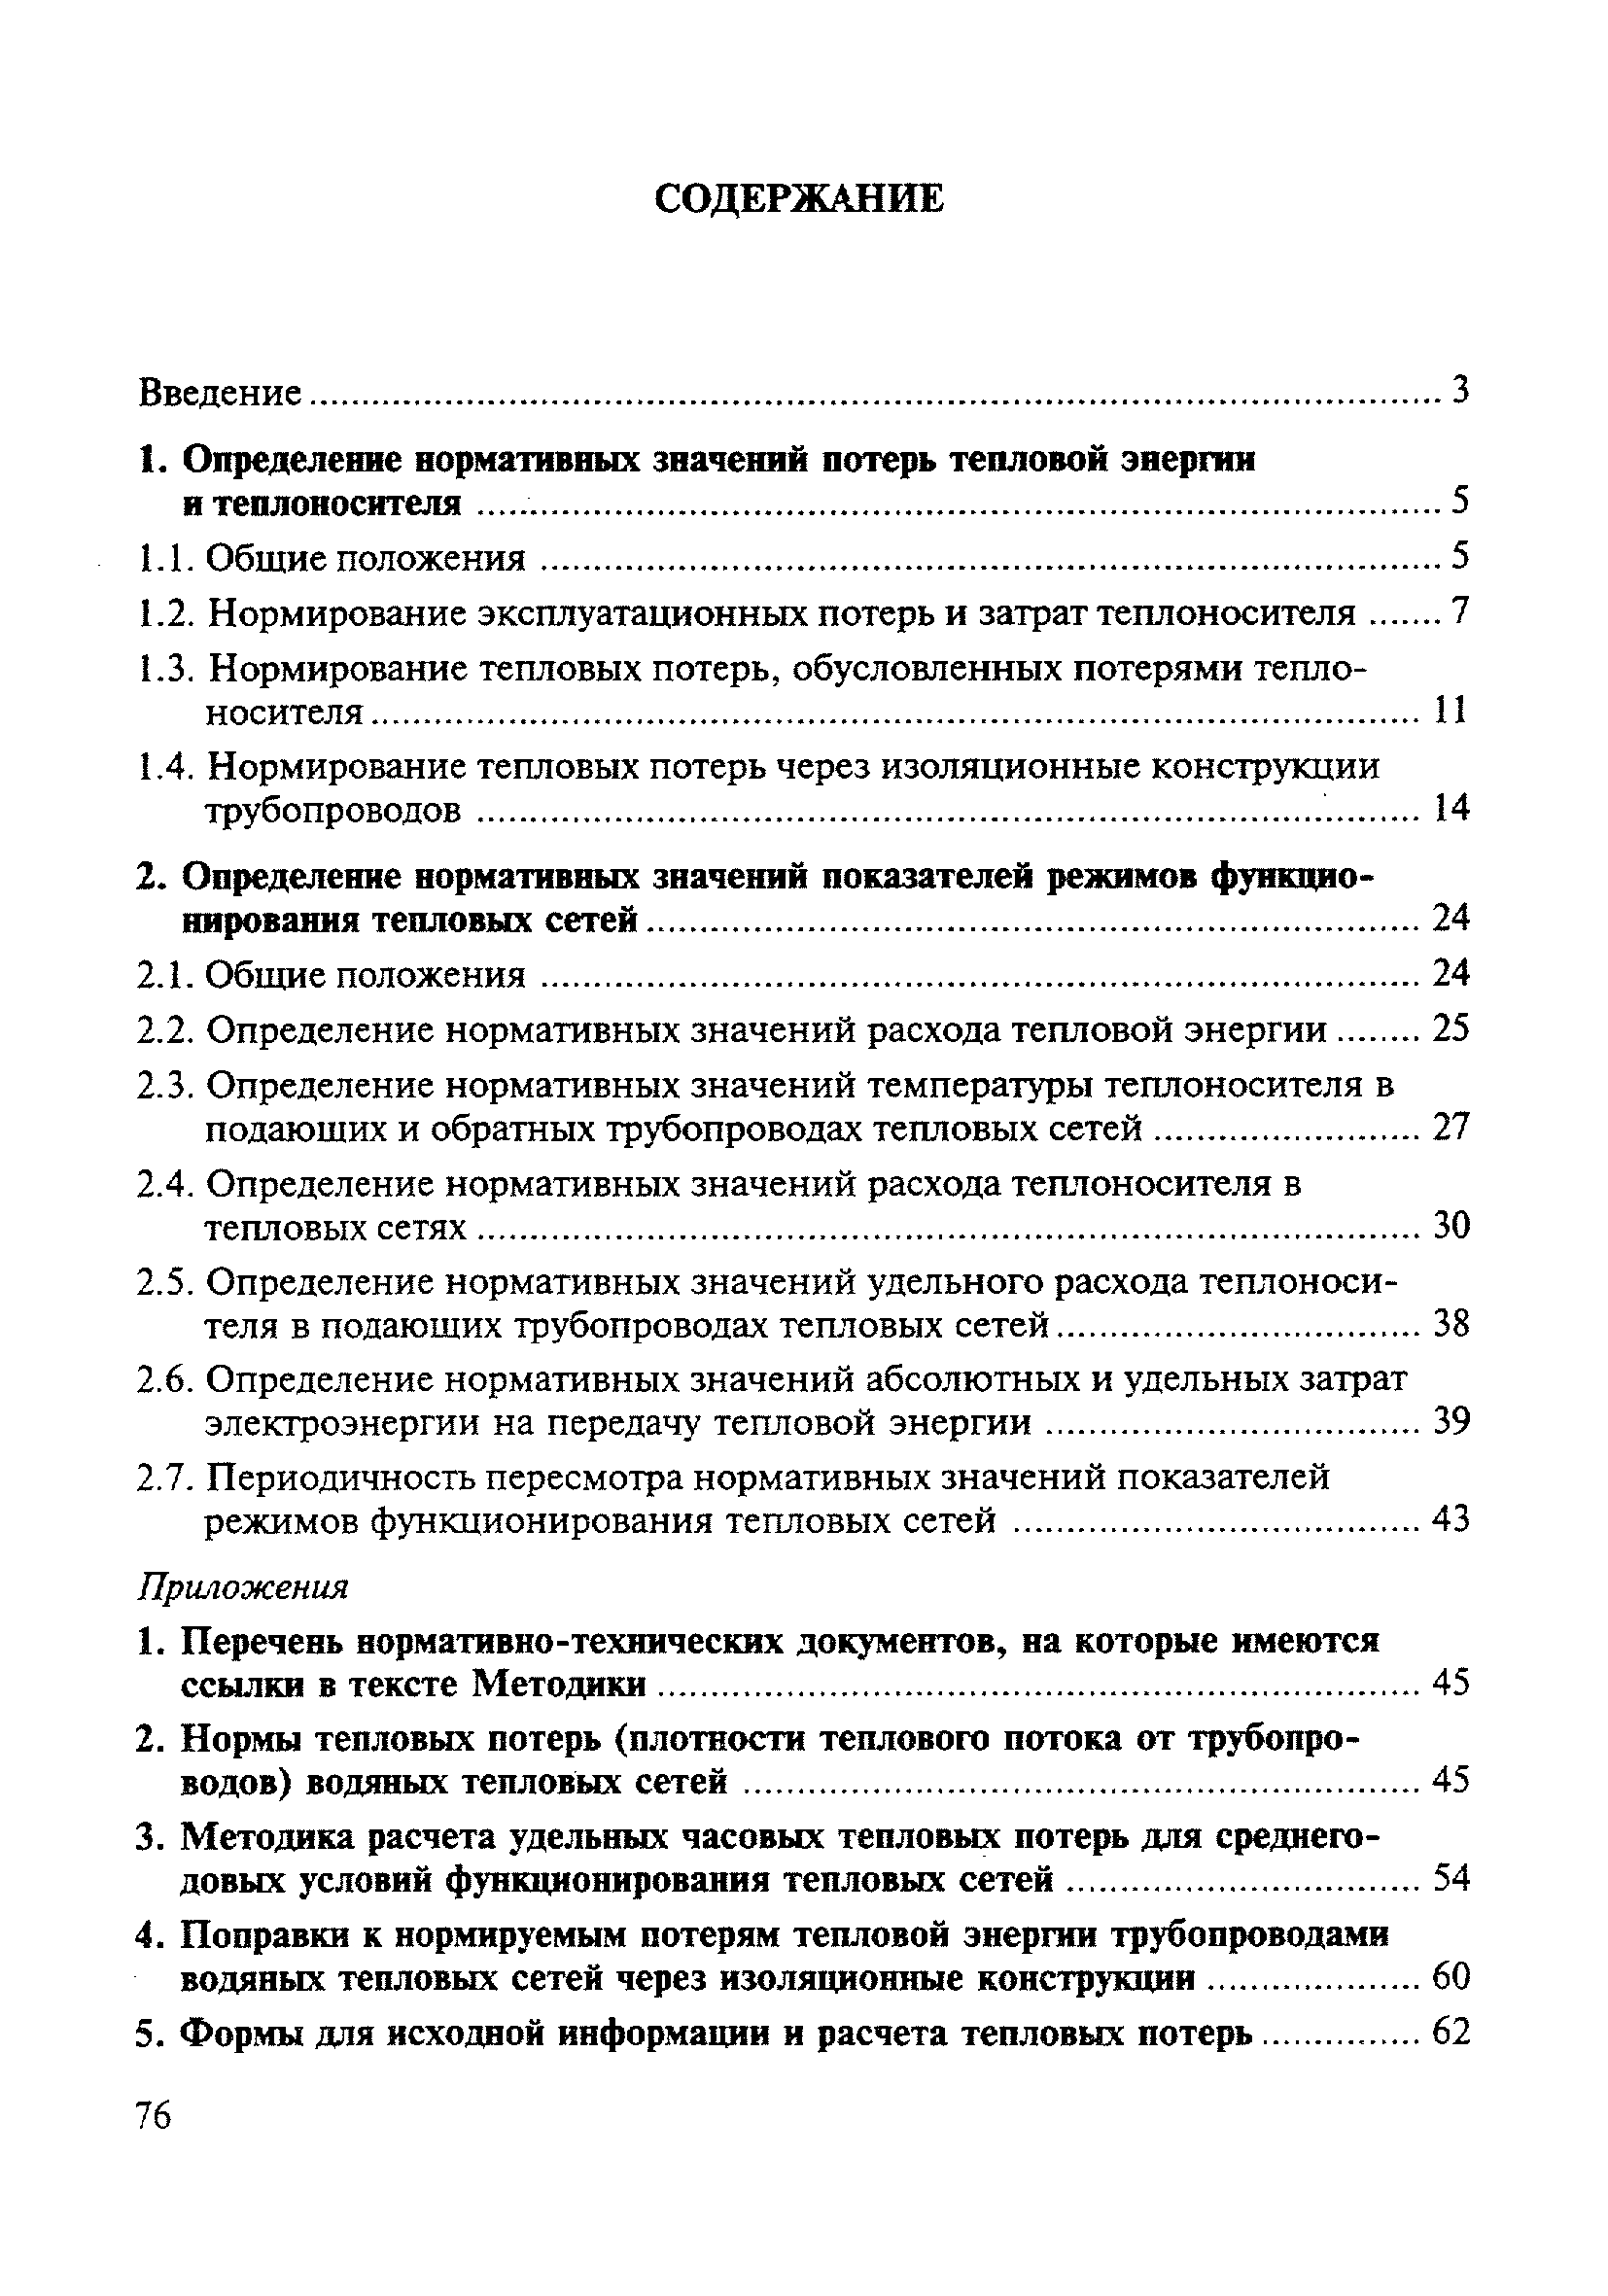 Ремонт тепловых сетей нормативные документы. Мдк 04.03